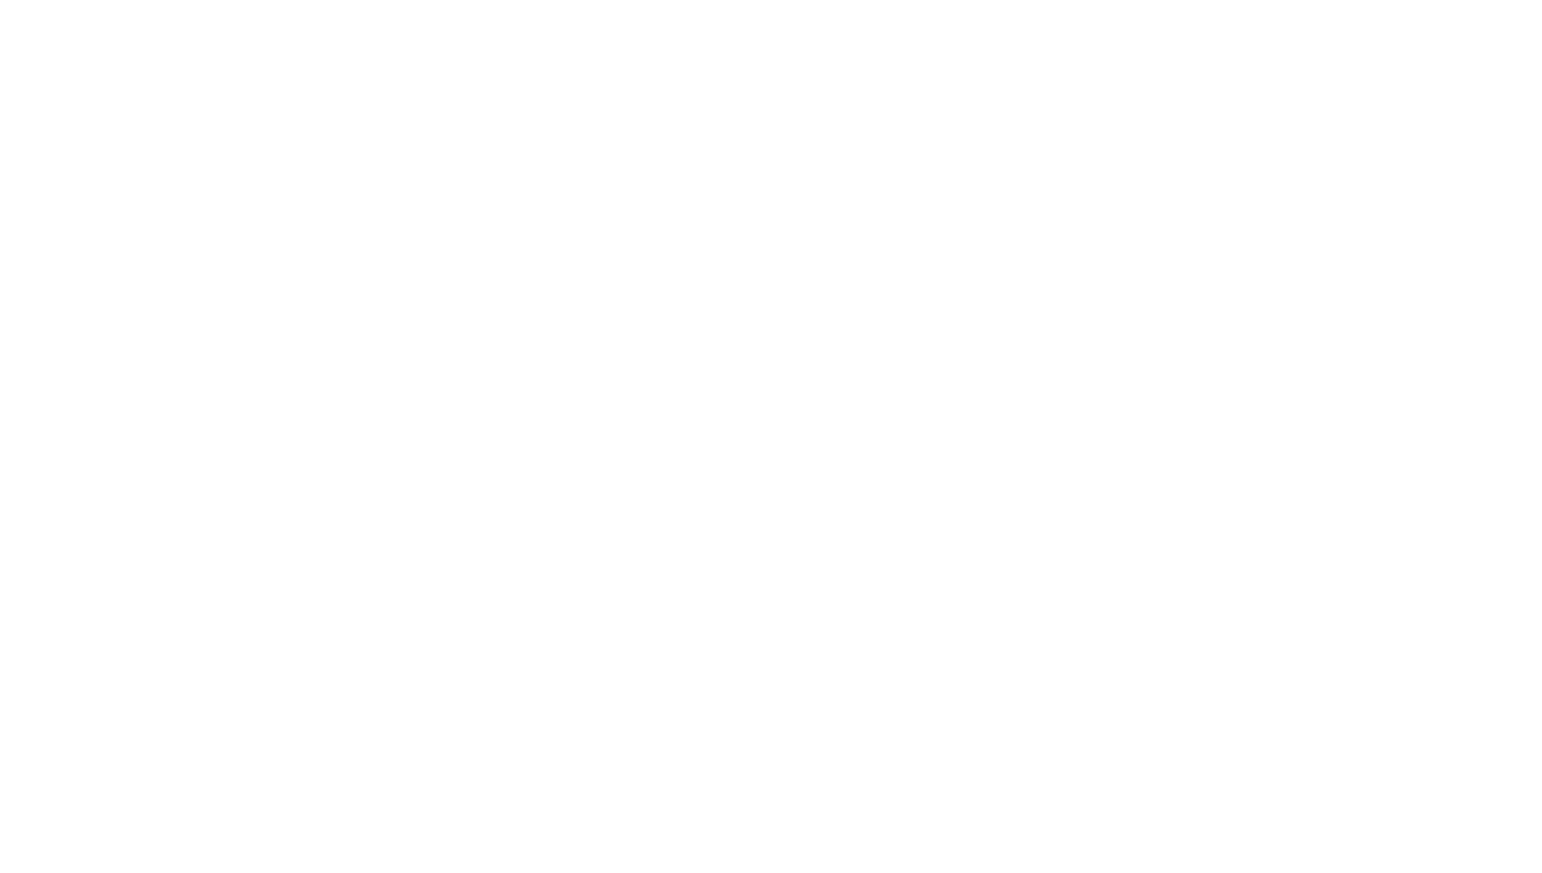 3DSystems